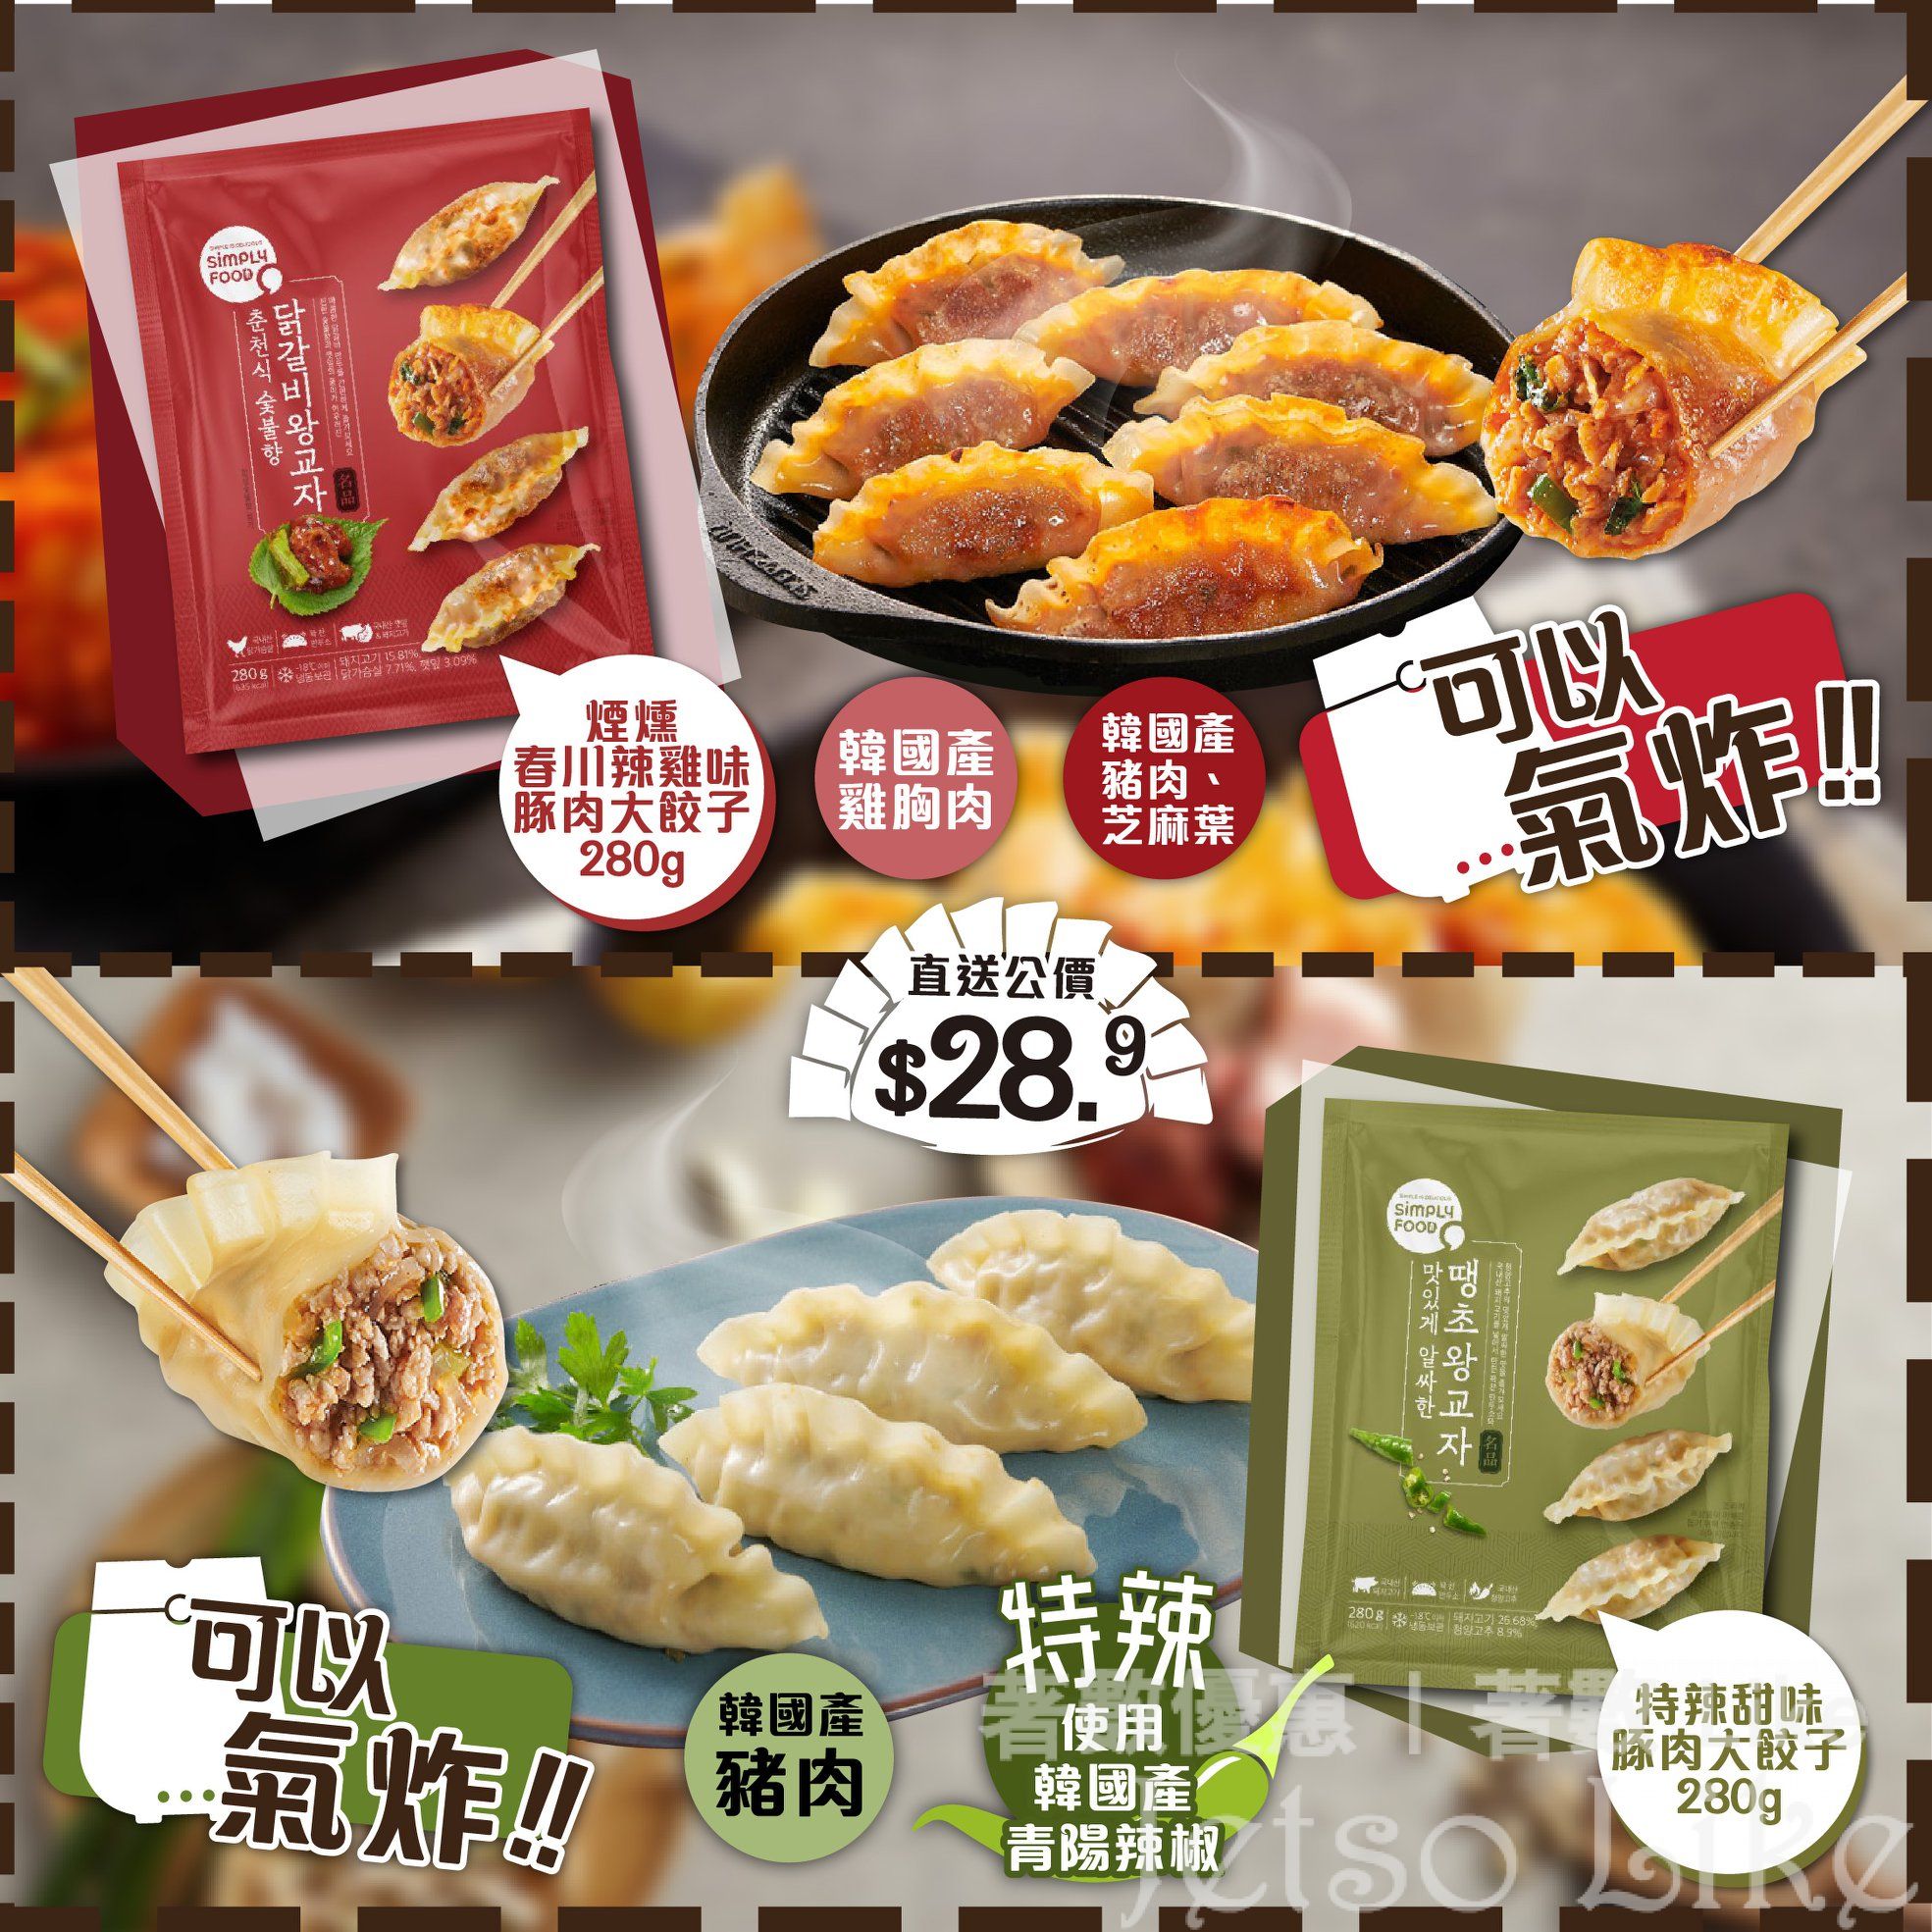 759 阿信屋 Simply Food 餃子系列推介 $28.9